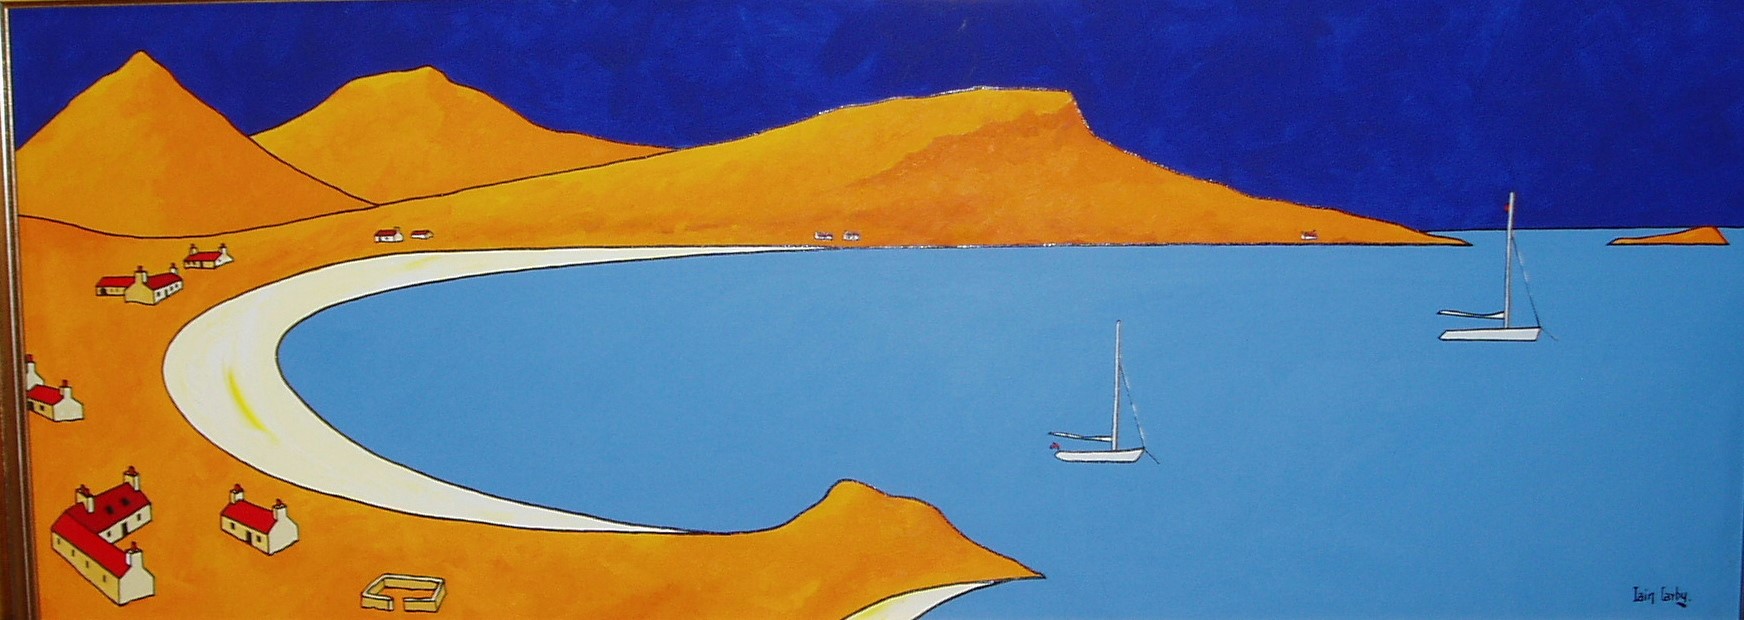 'Ardnachun Bay' by artist Iain Carby